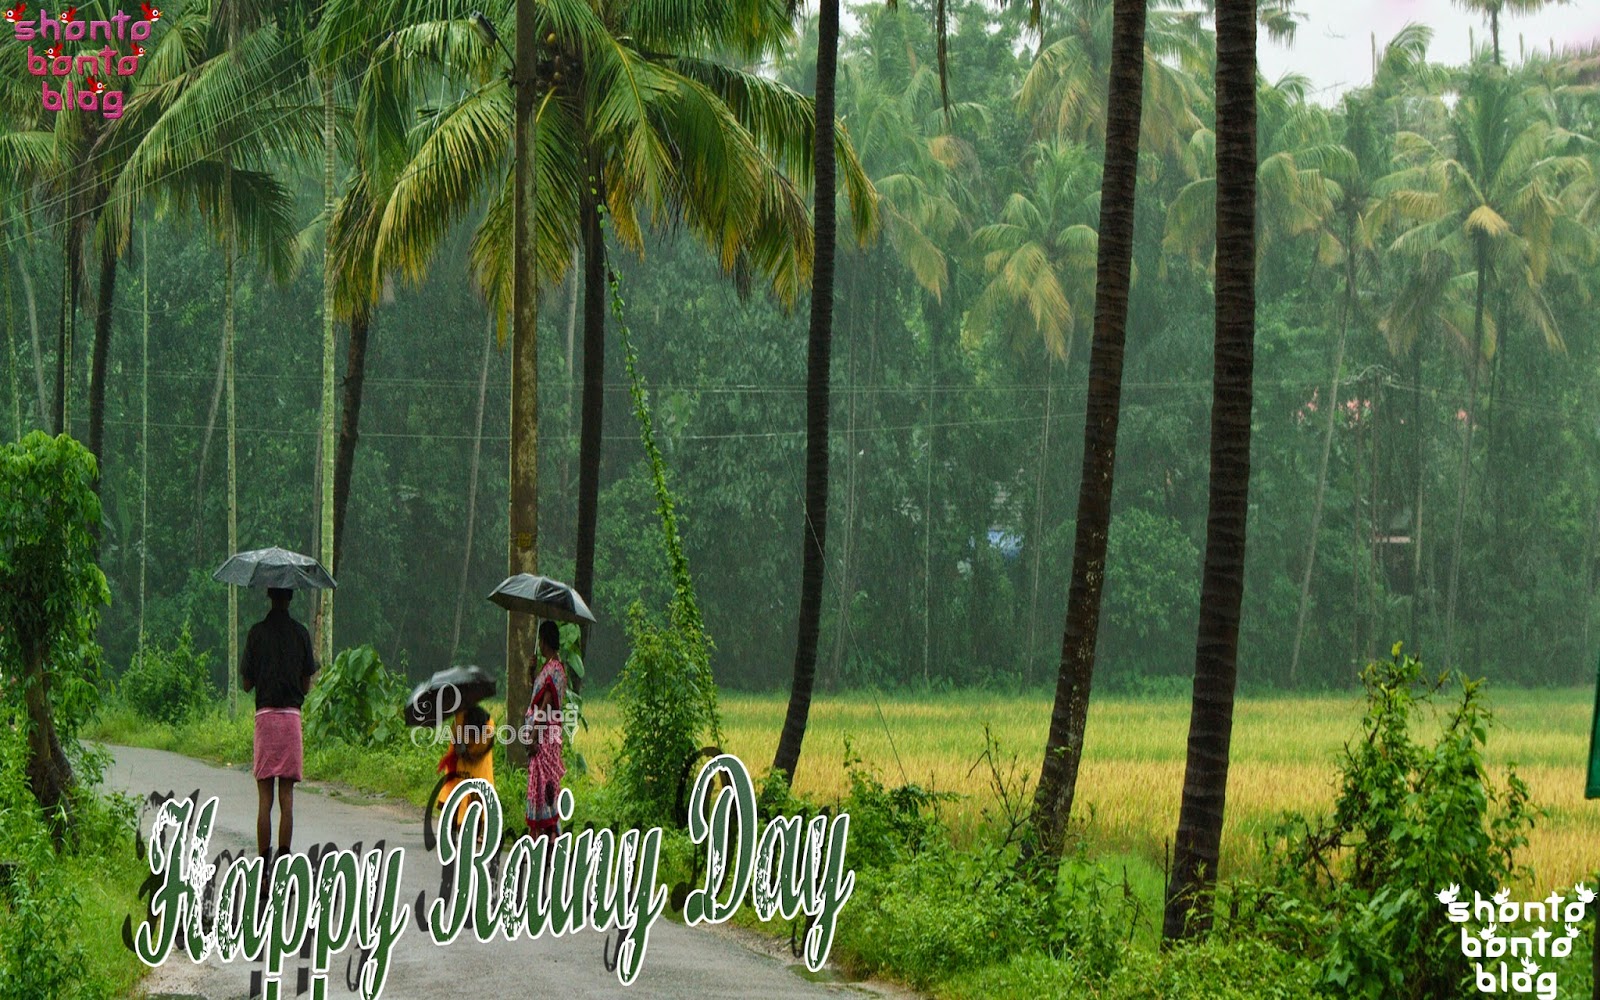 rainy good morning wallpapers,nature,vegetation,tree,natural environment,green